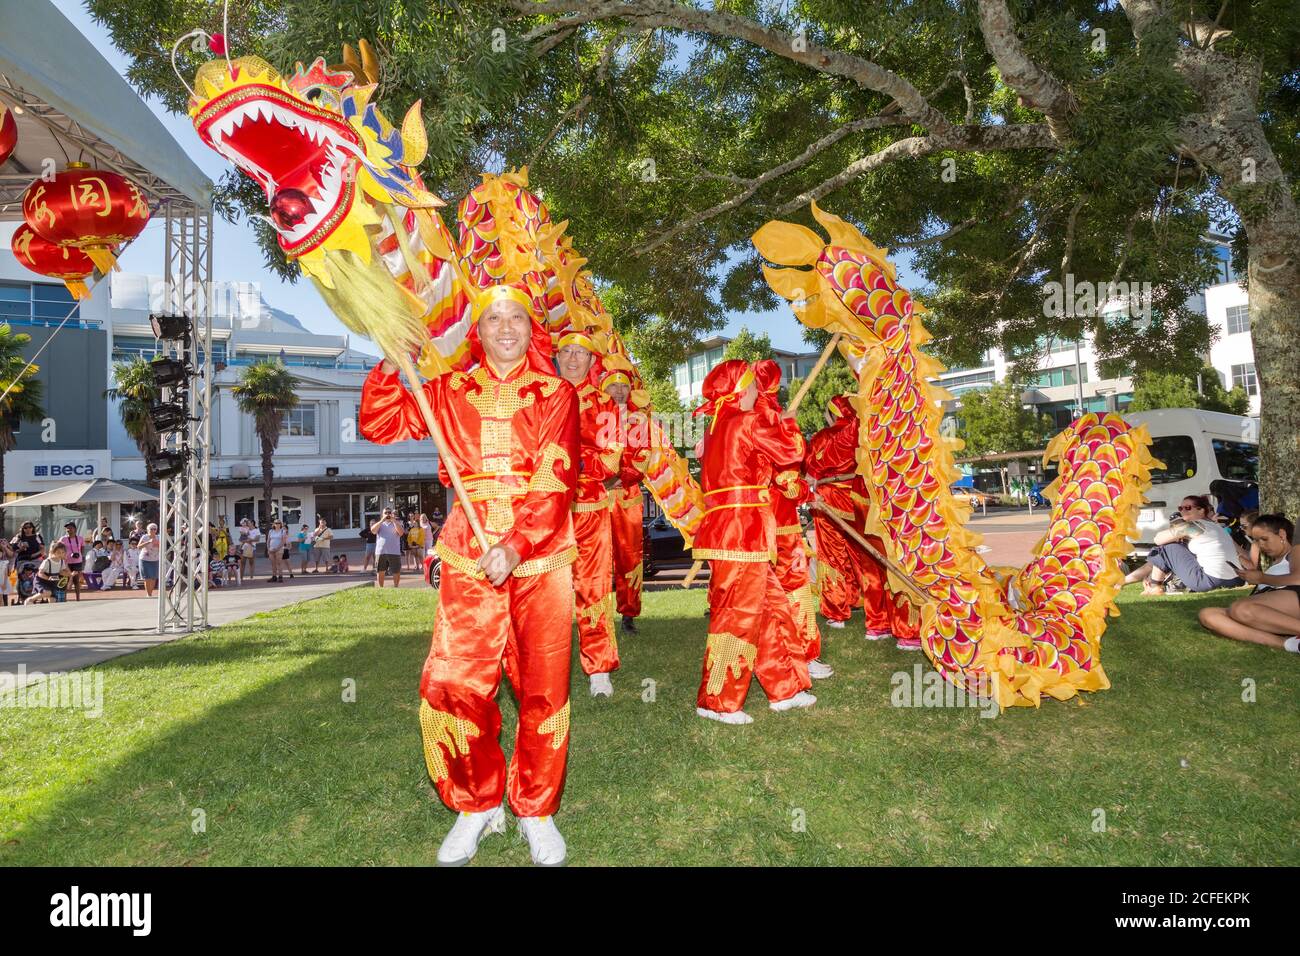 Ballerini cinesi di drago di Capodanno in un parco, con un drago giallo e rosso luminoso sui pali. Hamilton, Nuova Zelanda, 2/16/2019 Foto Stock